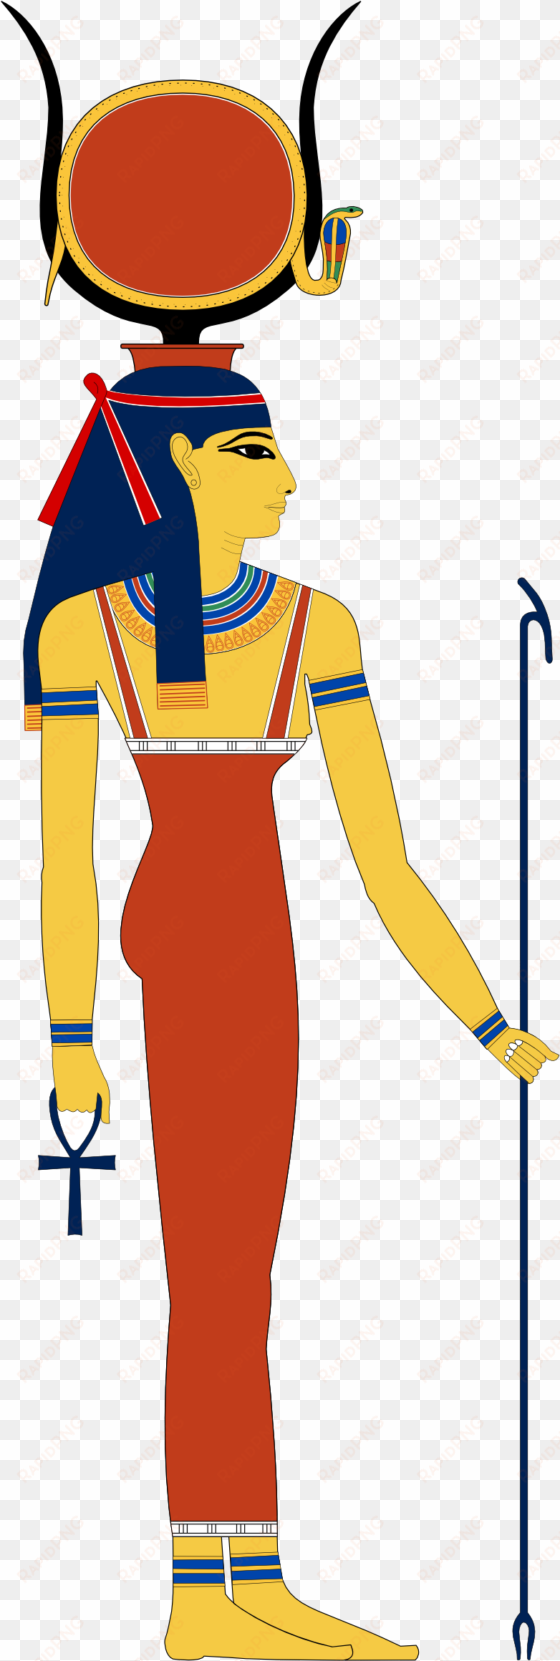 Egypt Hathor Svg 158 - Ancient Egyptian God Hathor transparent png image